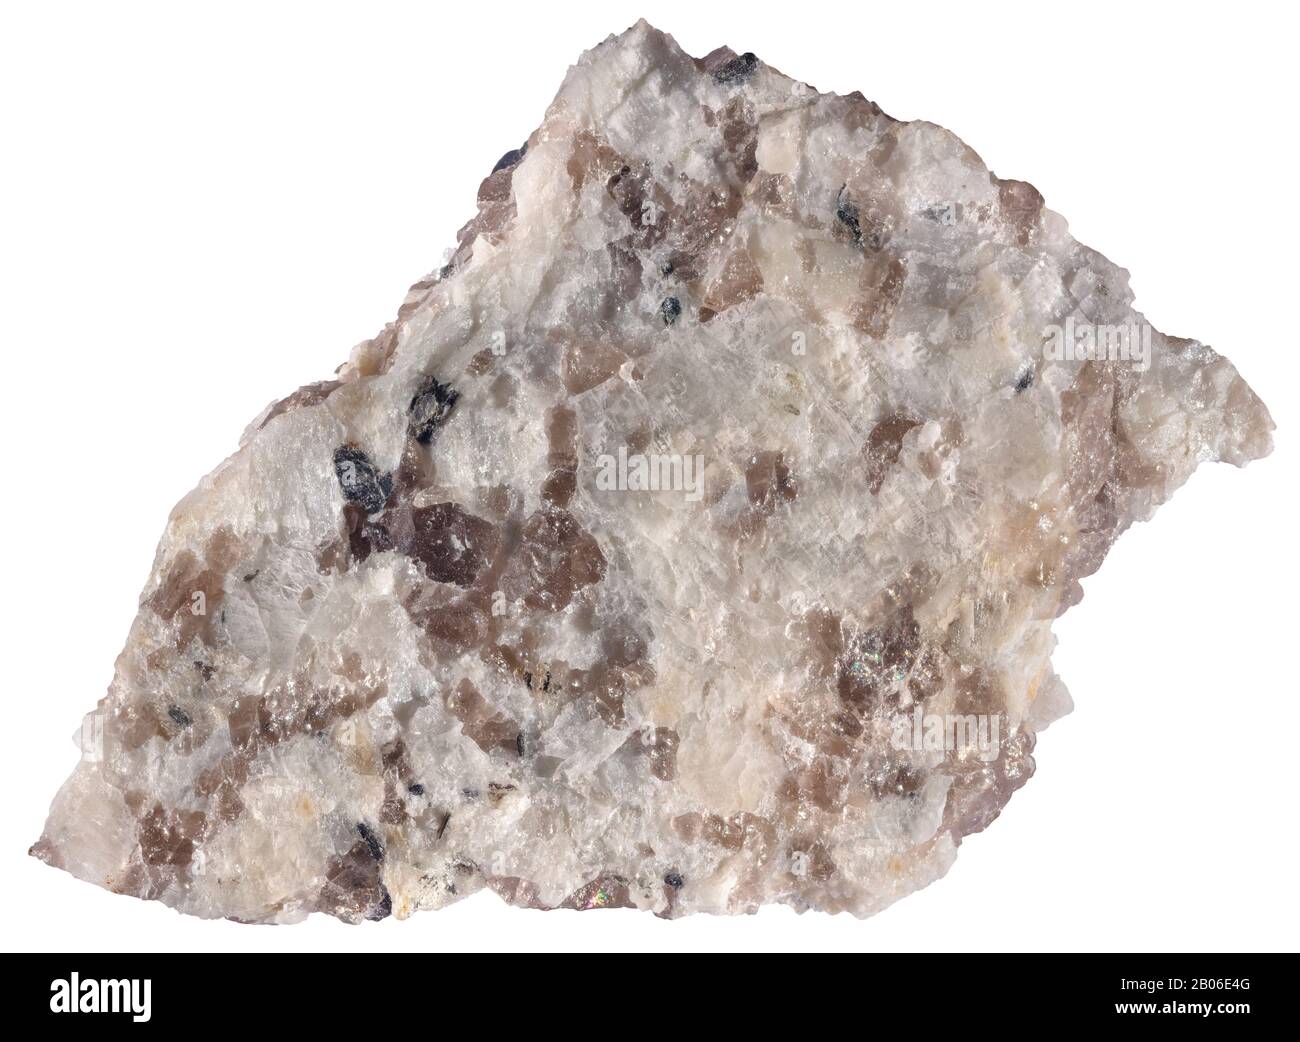 Leuco Gabbro, Plutonic, Maine el gabbro de grano grueso y refrigeración lenta es químicamente equivalente al basalto de grano fino y enfriamiento rápido. “Gabbro” puede ser apl Foto de stock